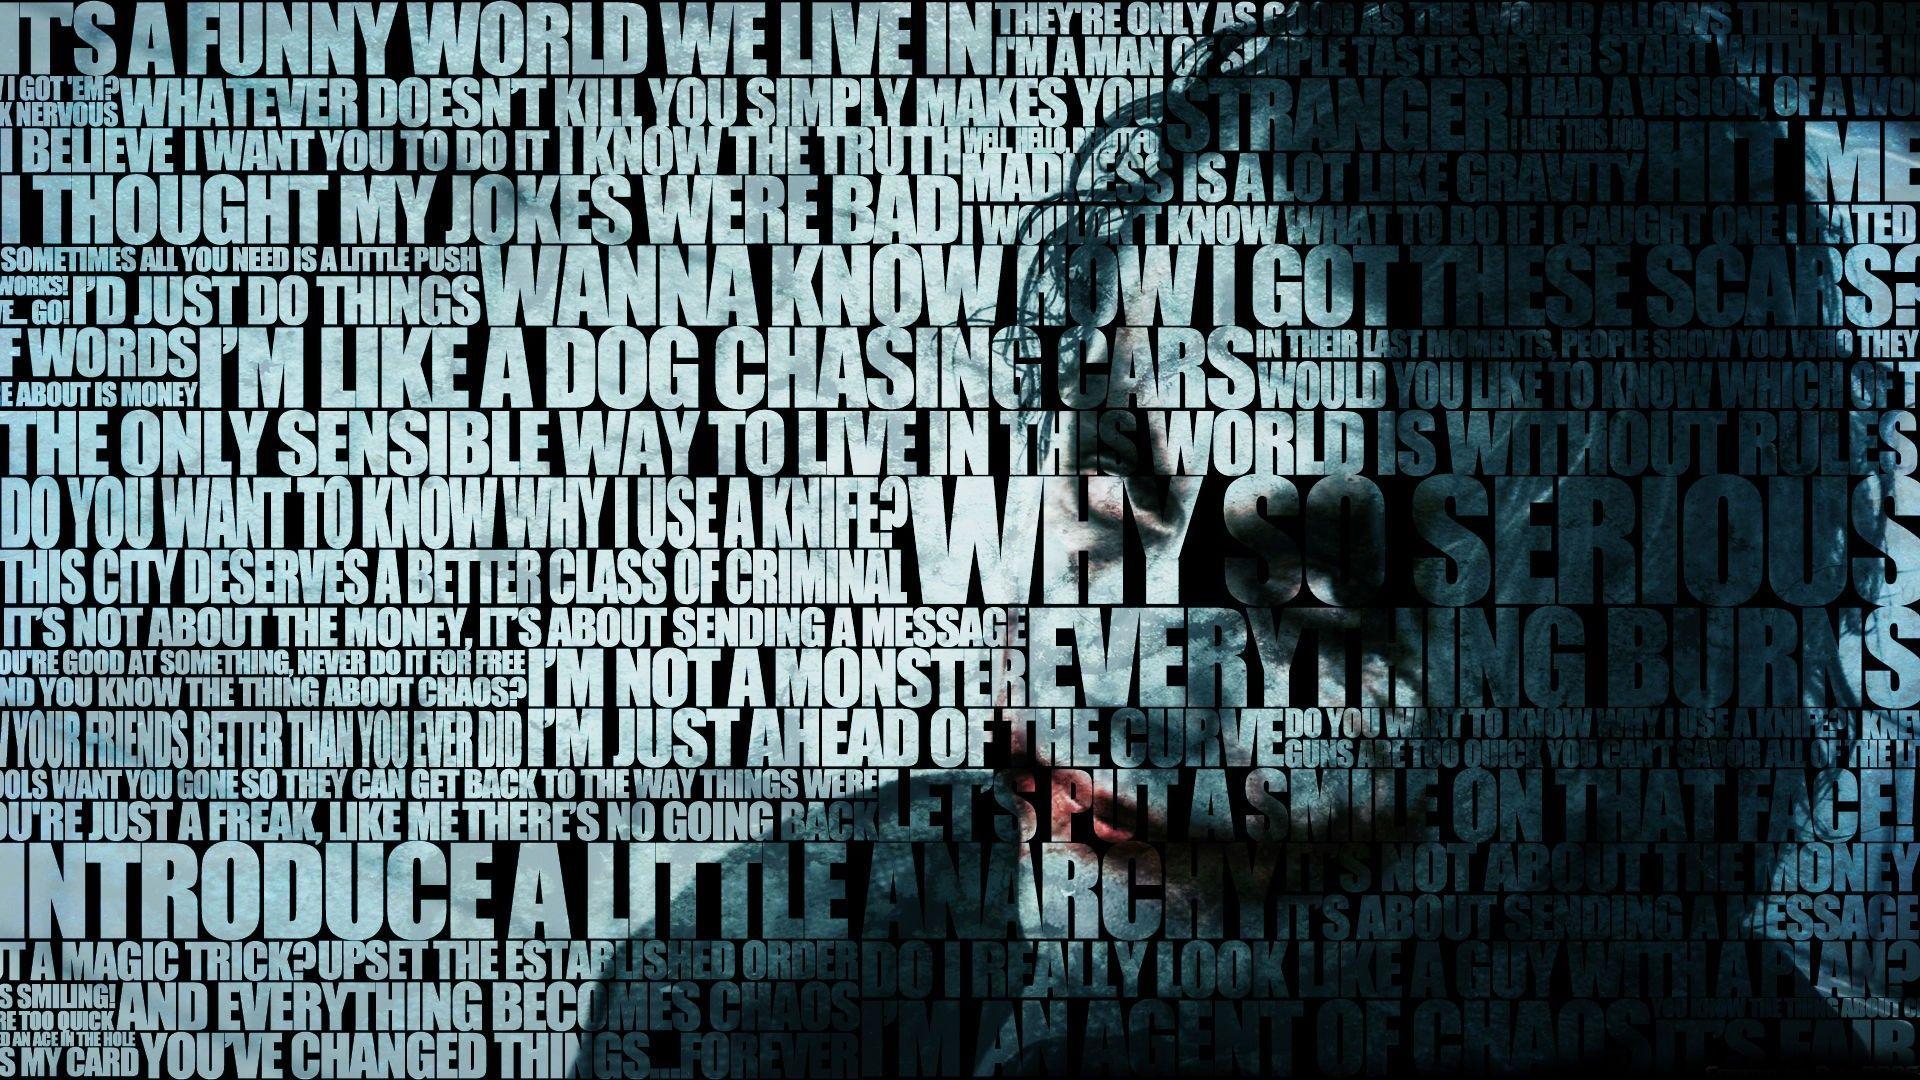 Batman And The Joker Wallpaper, 45 Batman And The Joker 2016